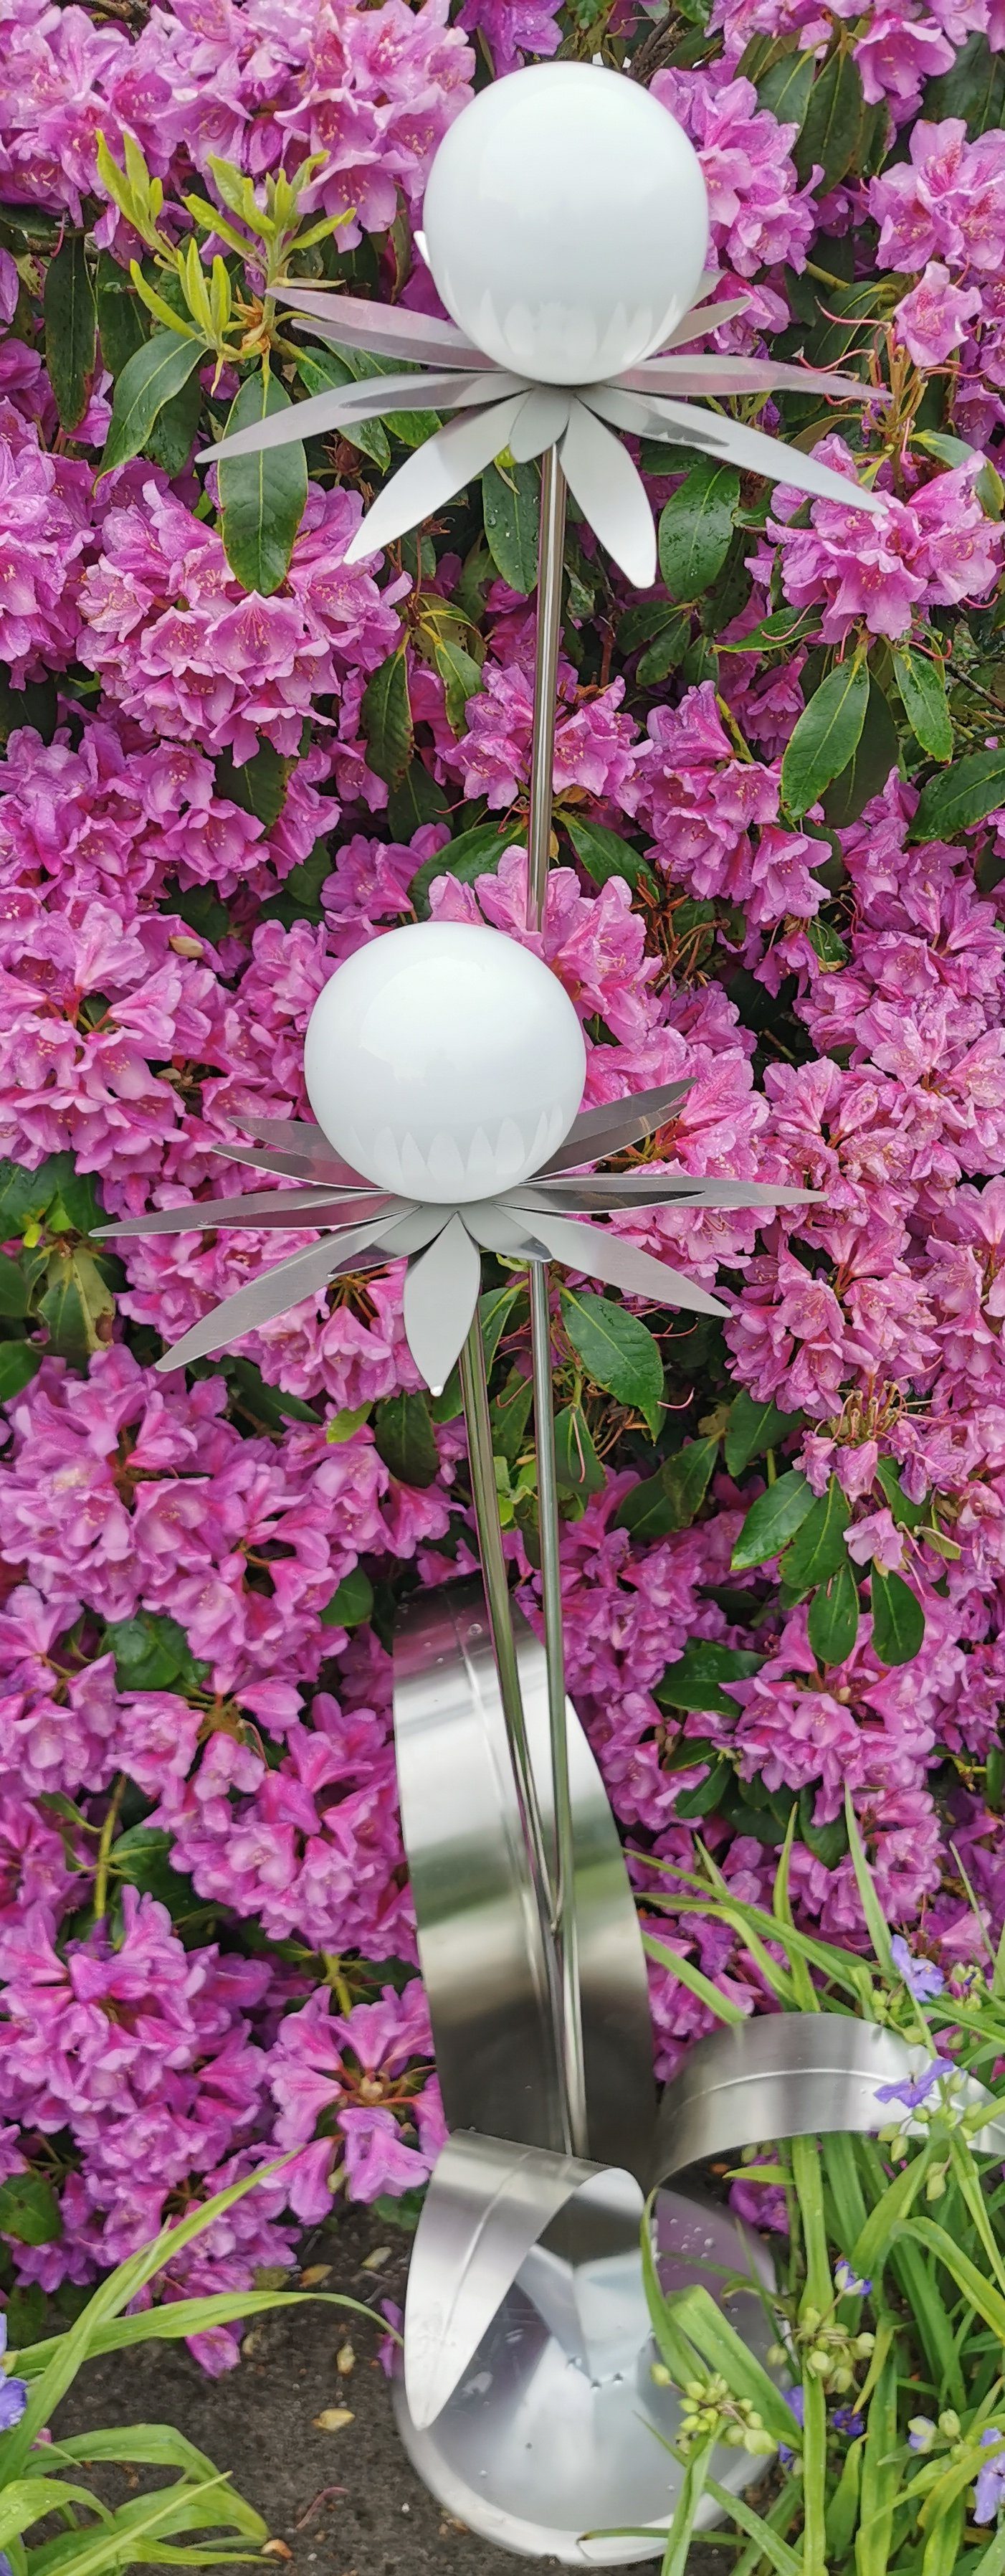 Garten-Ambiente Jürgen poliert Blume Milano Kugel Bocker cm Gartenstecker Skulptur weiß 120 Edelstahl Standfuß